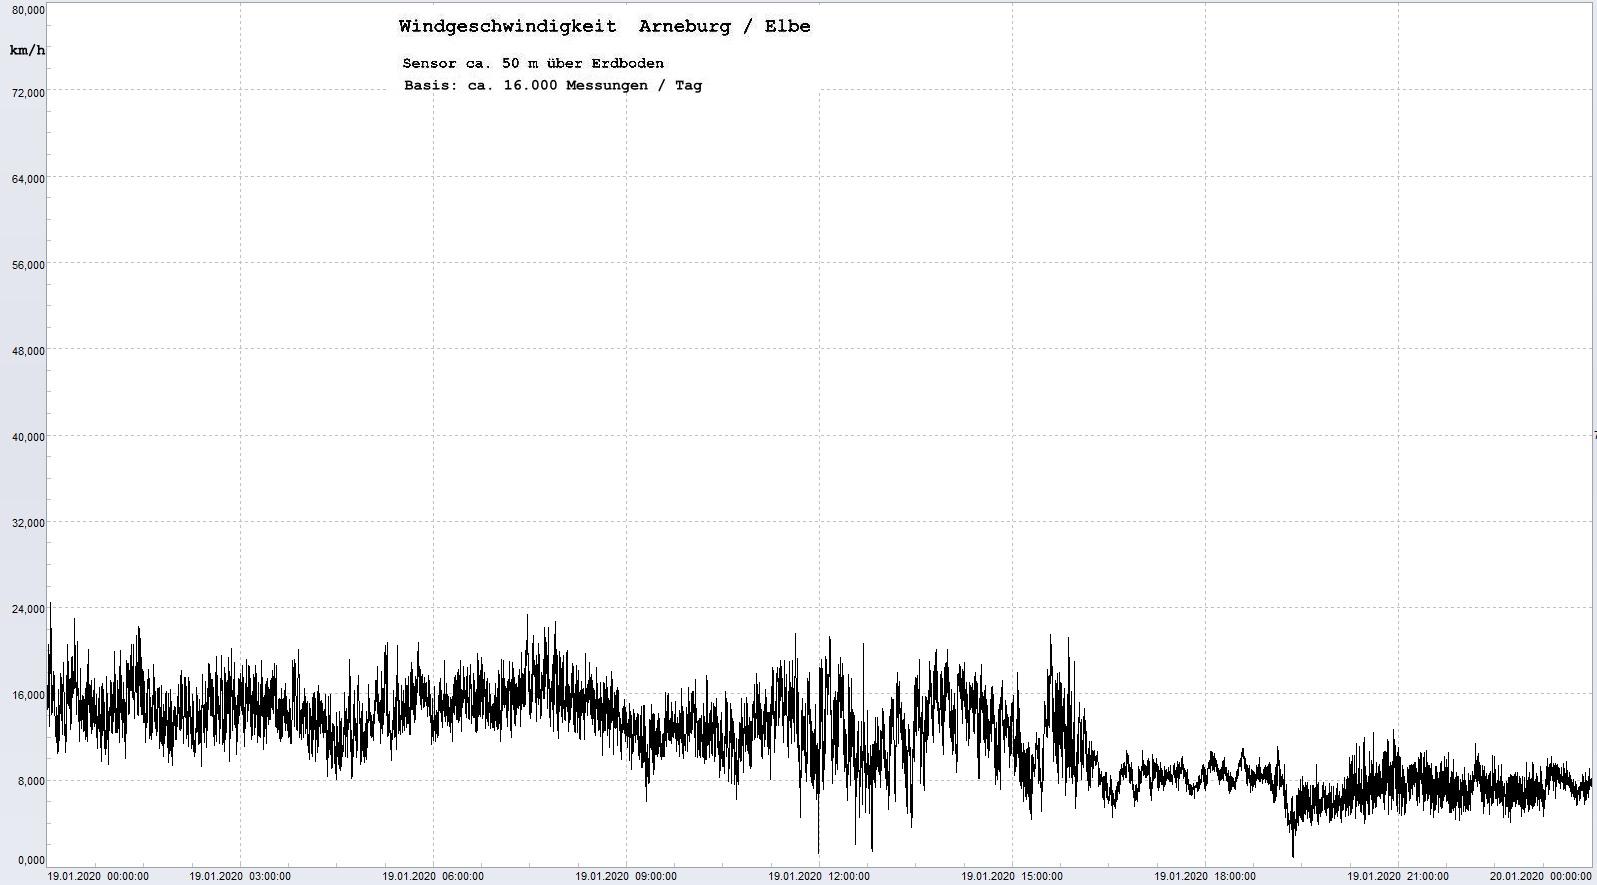 Arneburg Tages-Diagramm Winddaten, 19.01.2020
  Histogramm, Sensor auf Gebude, ca. 50 m ber Erdboden, Basis: 5s-Aufzeichnung